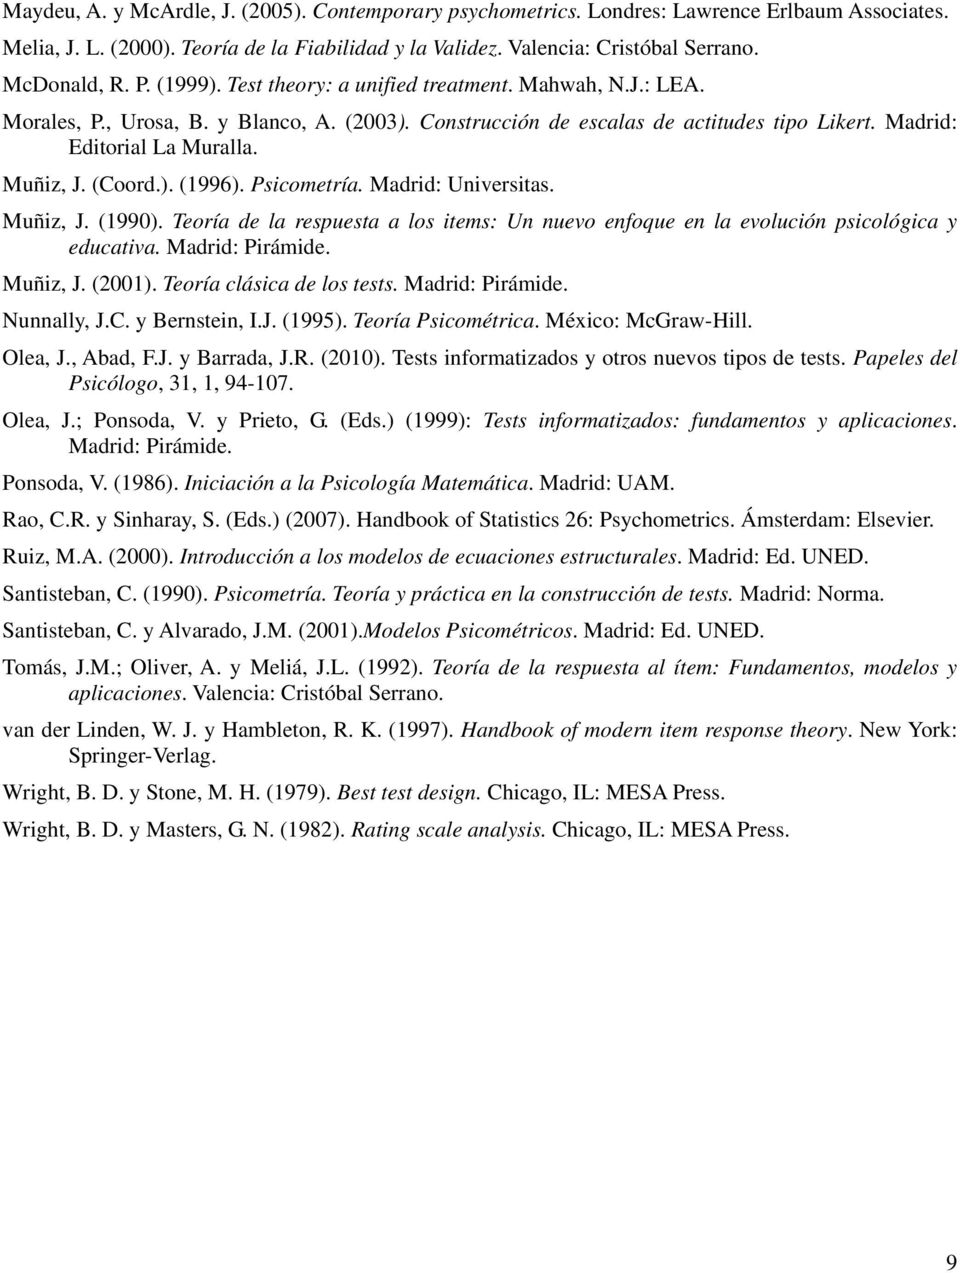 (Coord.). (1996). Psicometría. Madrid: Universitas. Muñiz, J. (1990). Teoría de la respuesta a los items: Un nuevo enfoque en la evolución psicológica y educativa. Madrid: Pirámide. Muñiz, J. (2001).